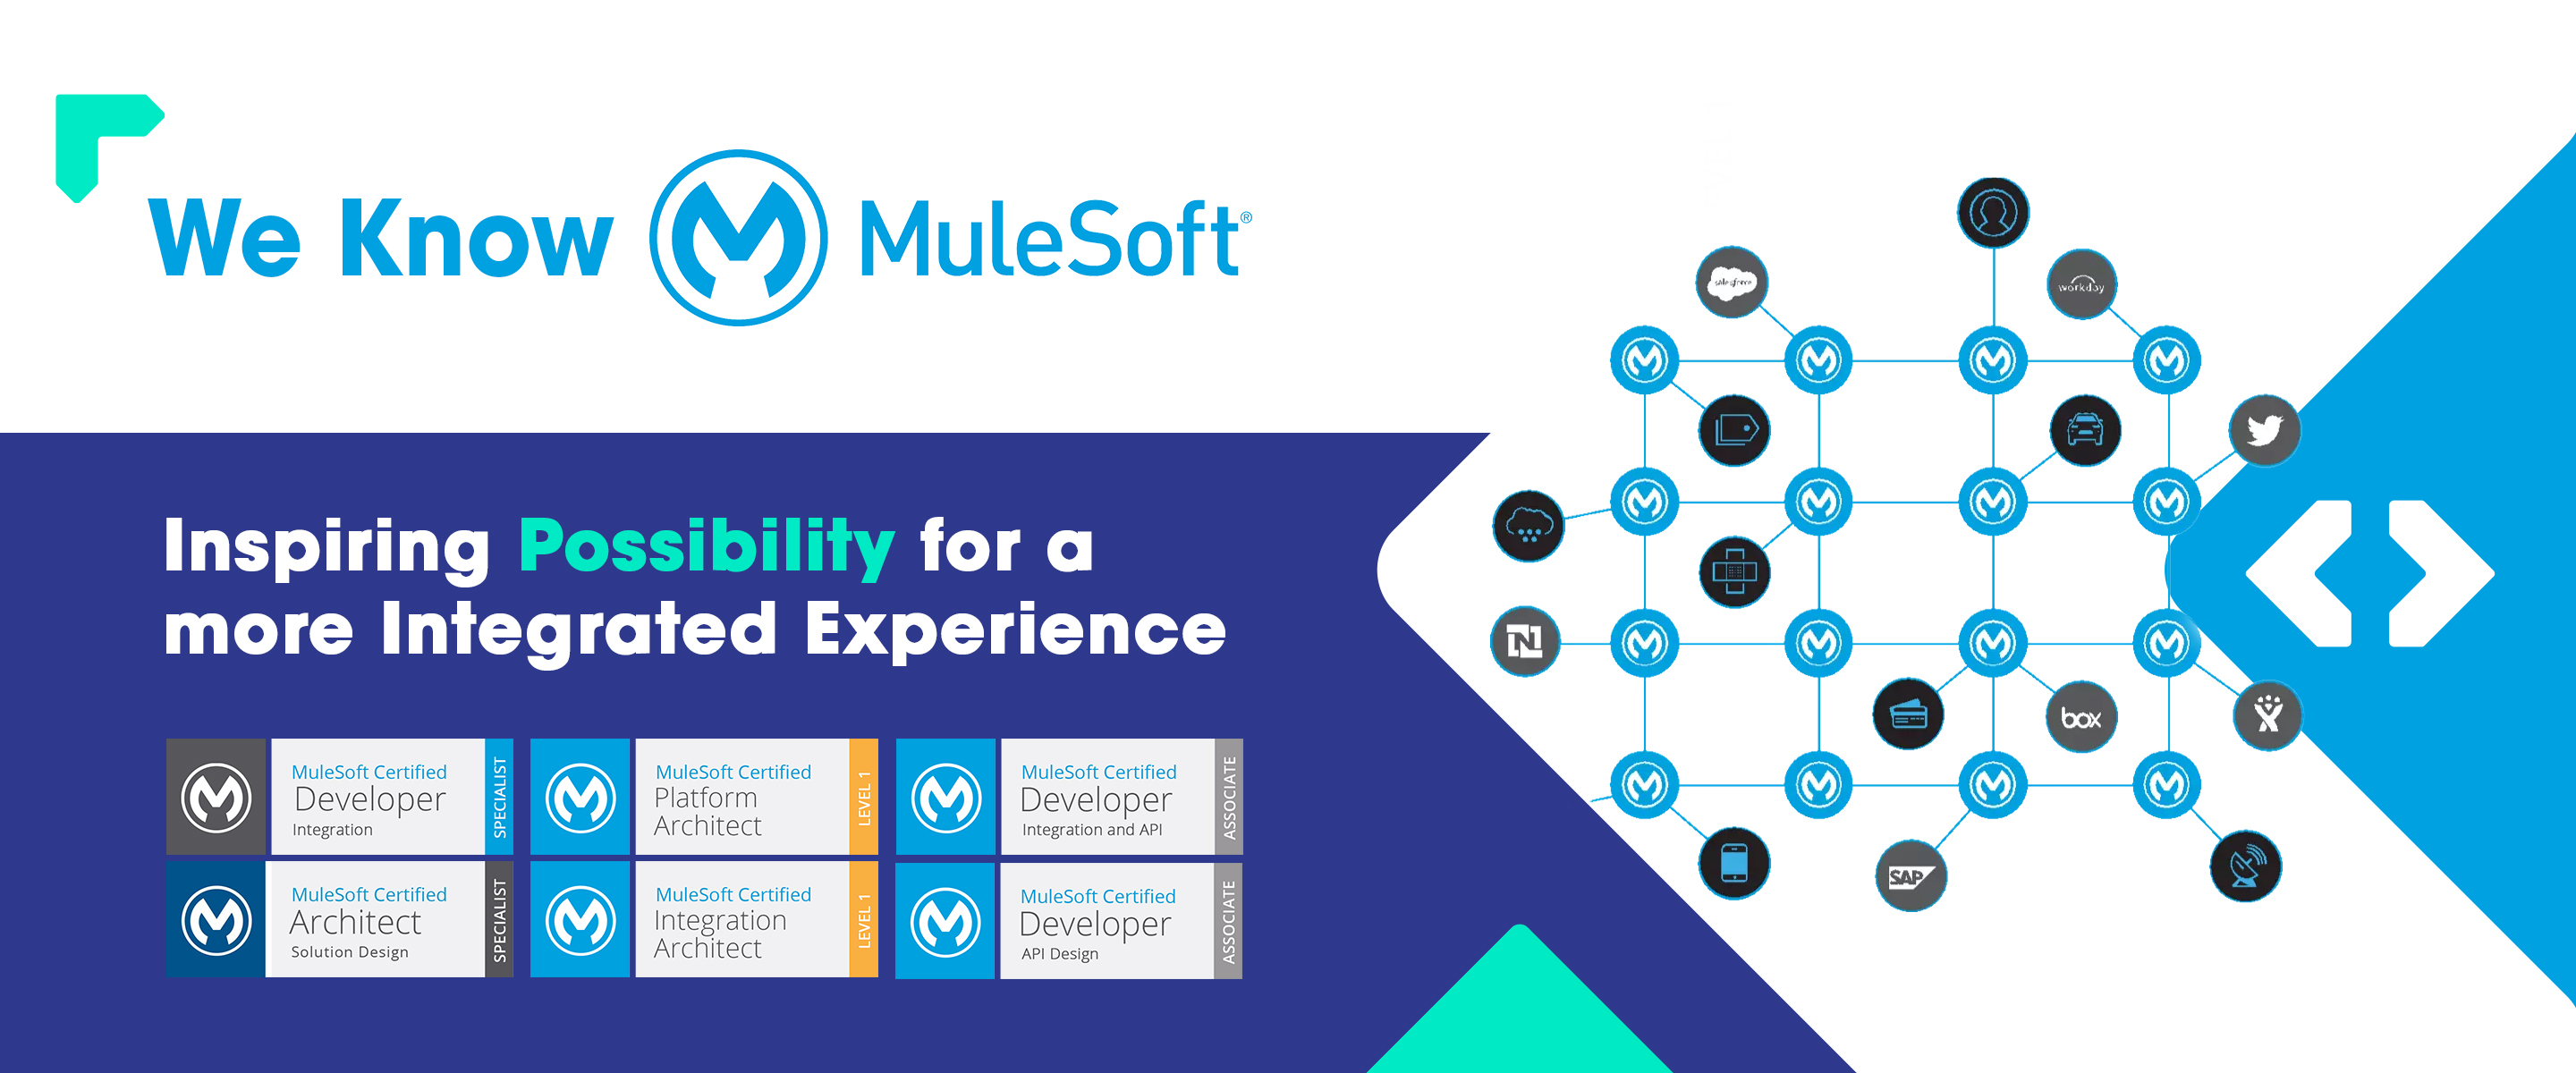 mulesoft implementation, mulesoft architects